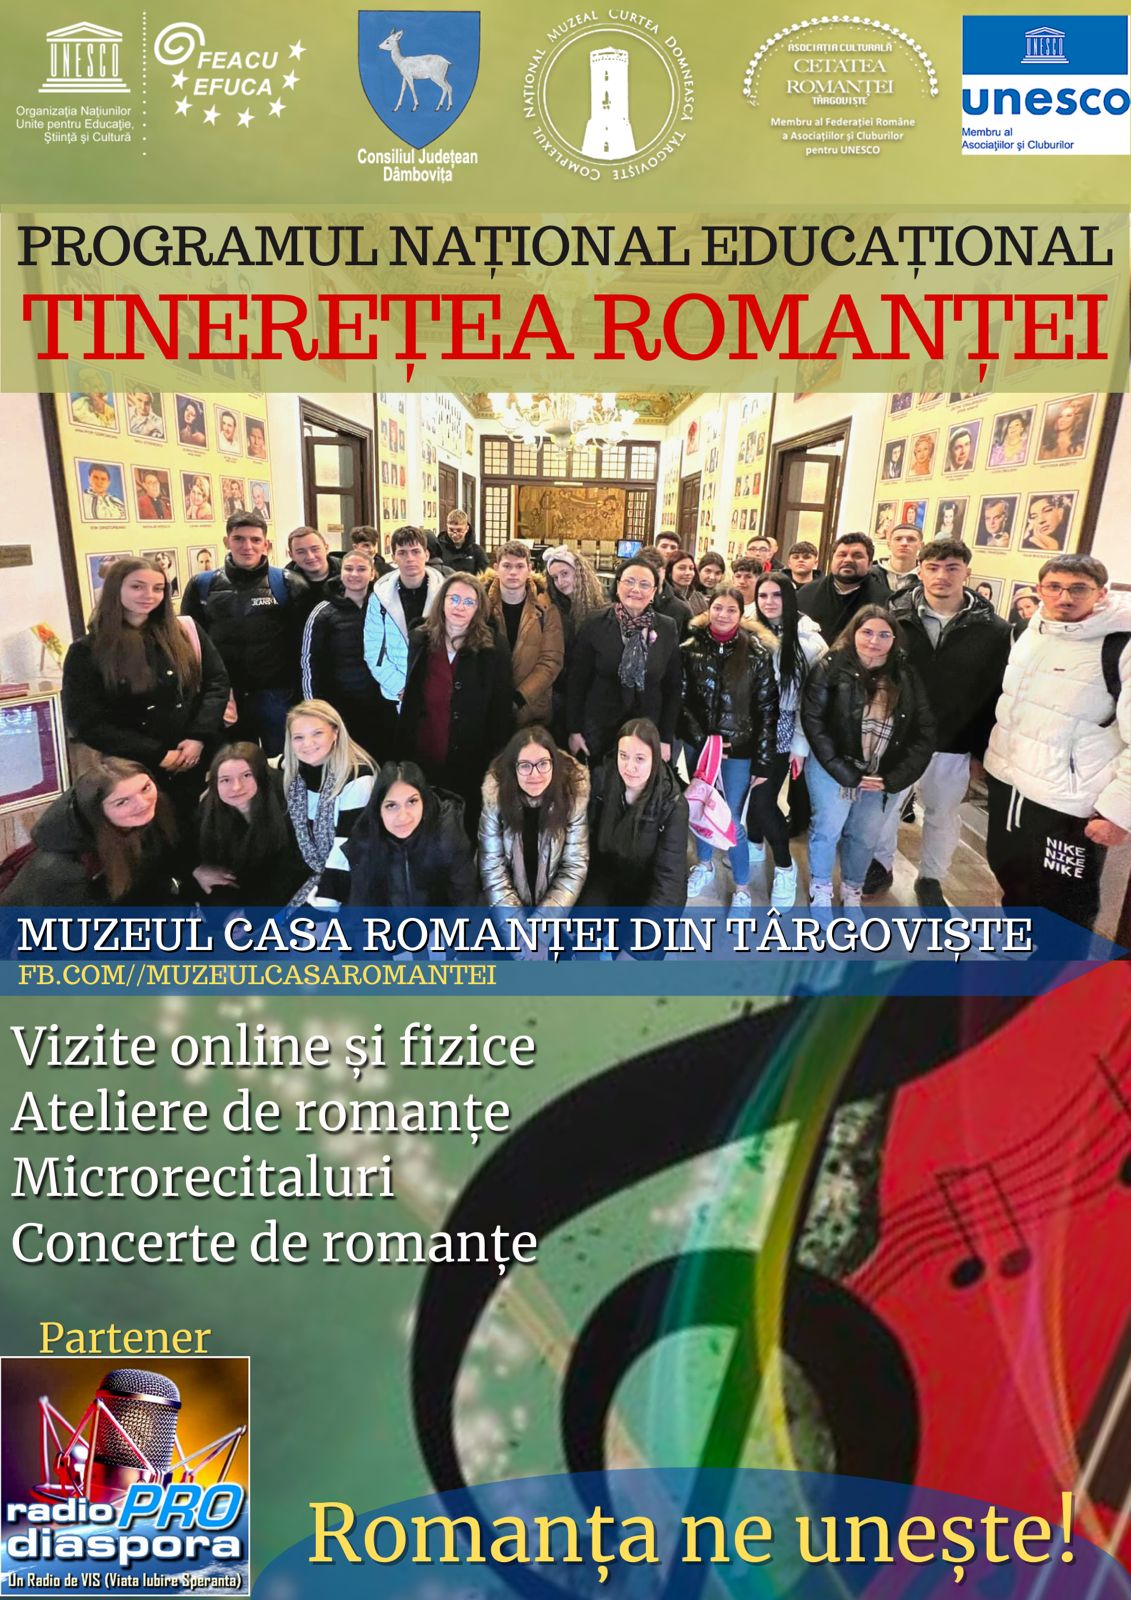 Mărțișorul și Romanța la Muzeul „Casa Romanței” din Târgoviște